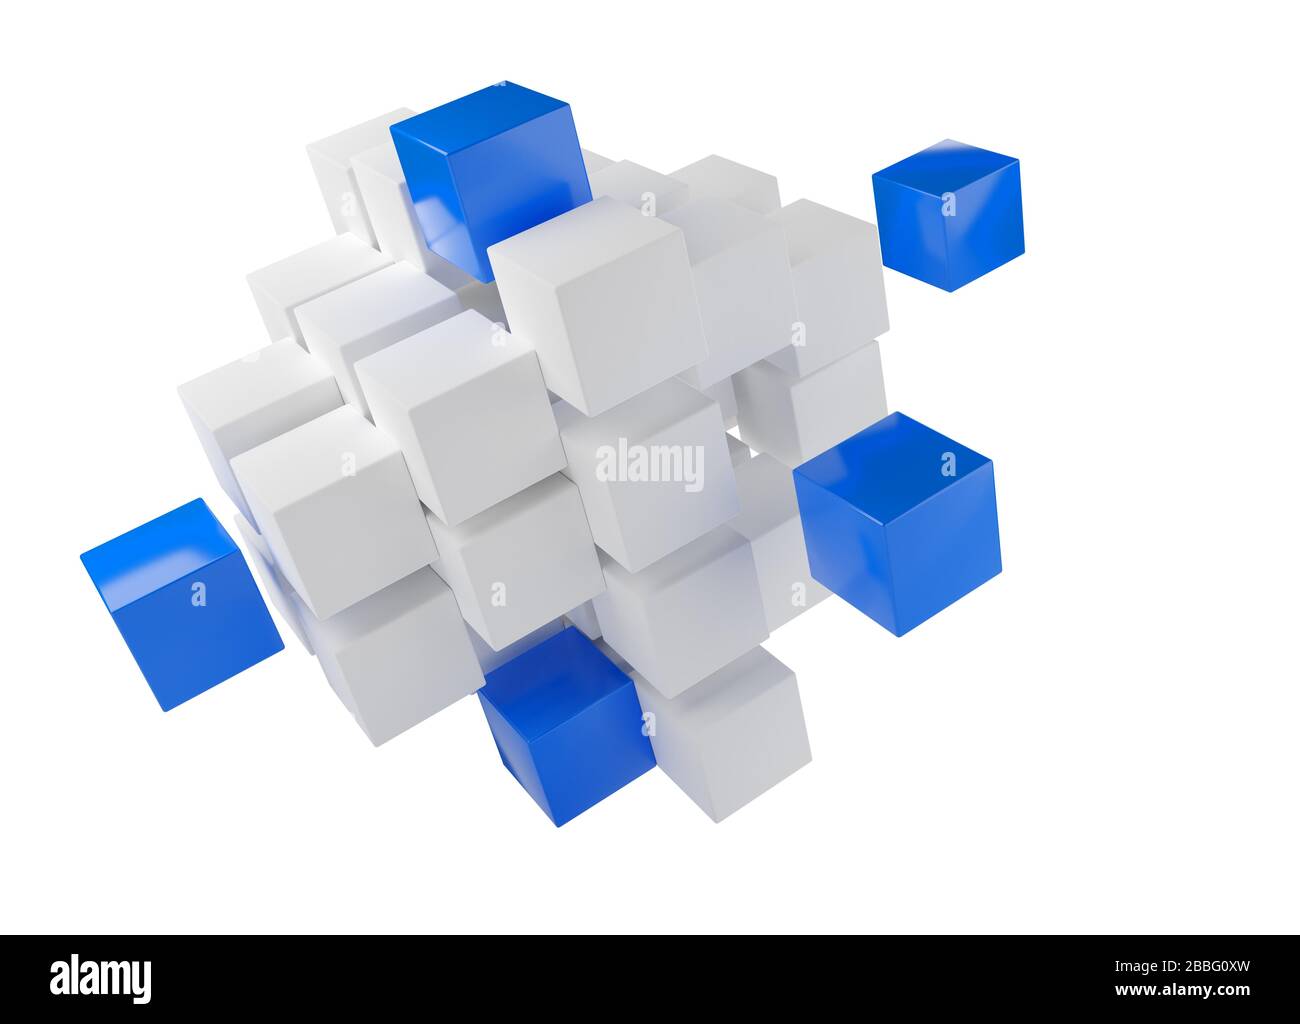 Blaue Würfel aus einem Haufen weißer Würfel über weißem Hintergrund - Softwaremodul, Teamarbeit oder das herausstehen aus dem Crowd Leadership Konzept, 3D Illustrati Stockfoto